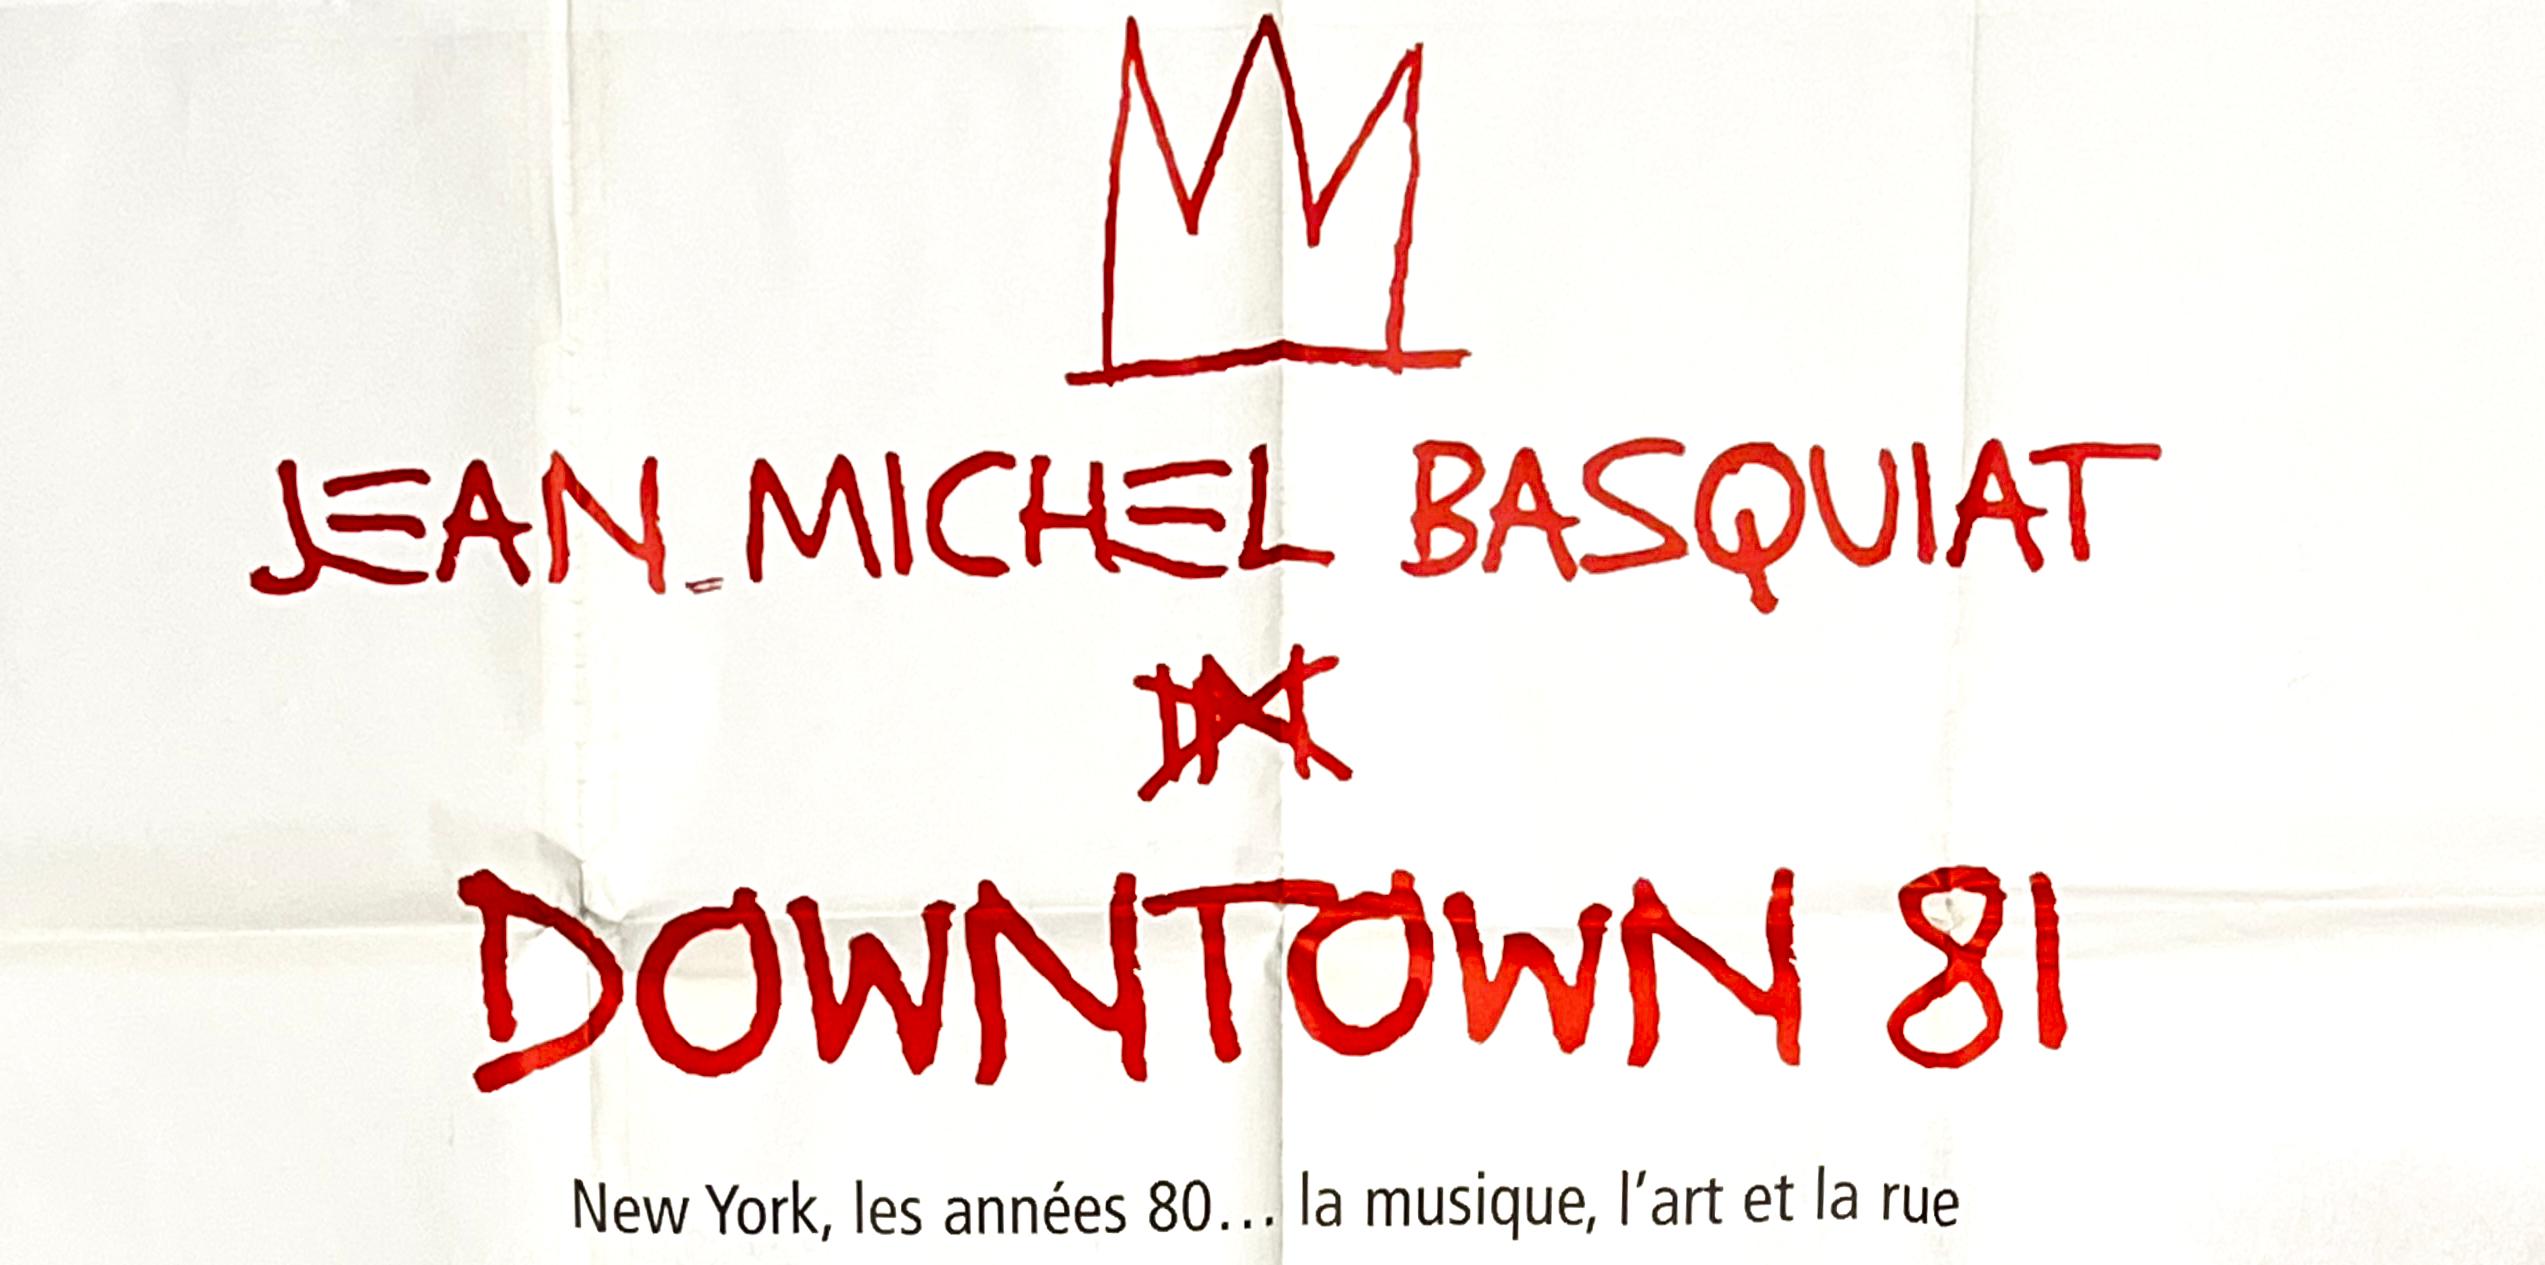 Affiche du film Basquiat Downtown 81 (vintage Basquiat)  - Pop Art Print par Jean-Michel Basquiat